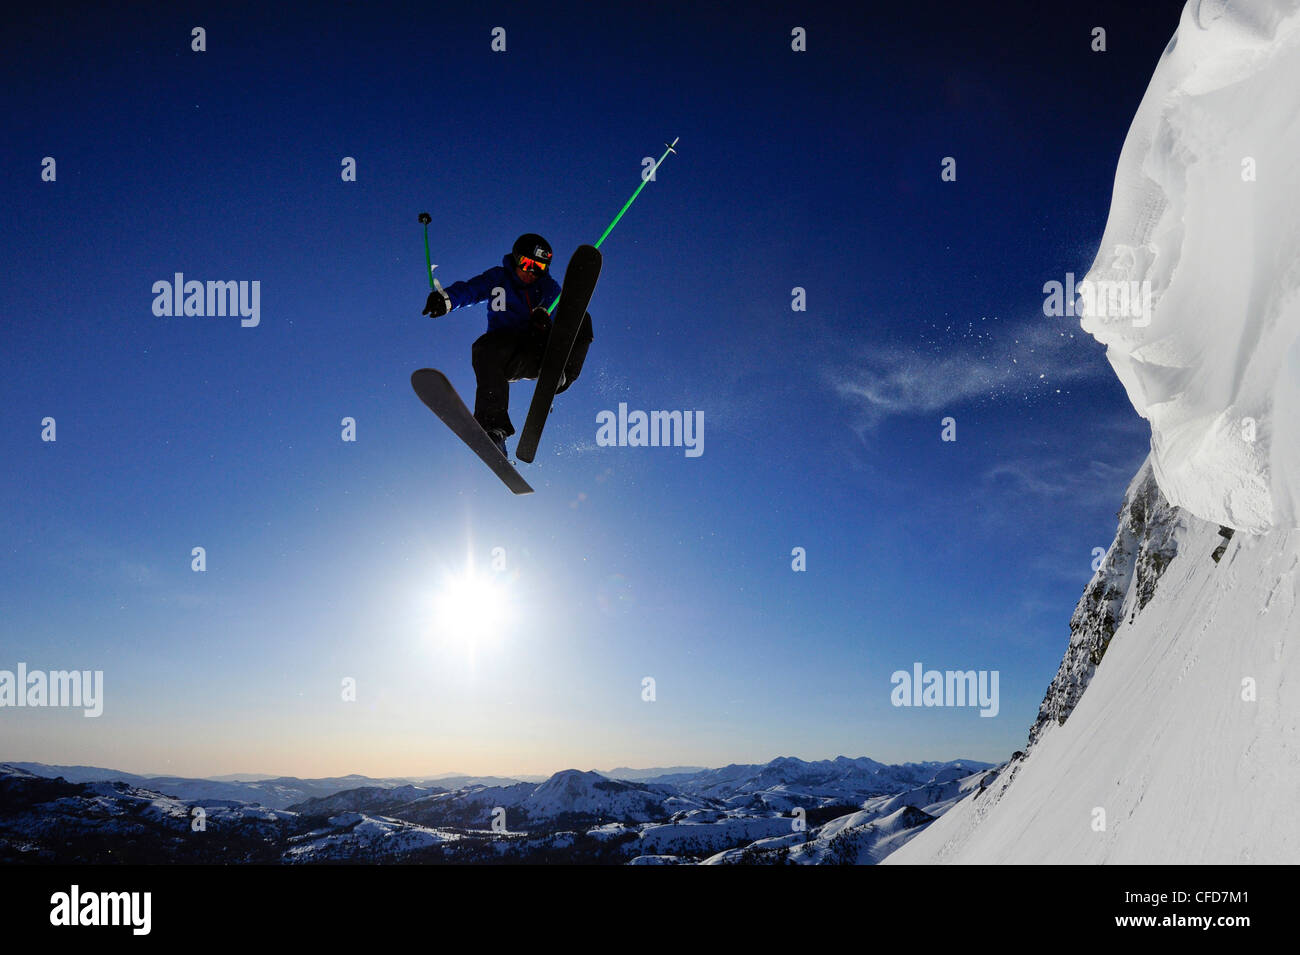 Un skieur s'élance dans l'air au lever du soleil dans les montagnes de la Sierra Nevada, près du lac Tahoe, en Californie. Banque D'Images